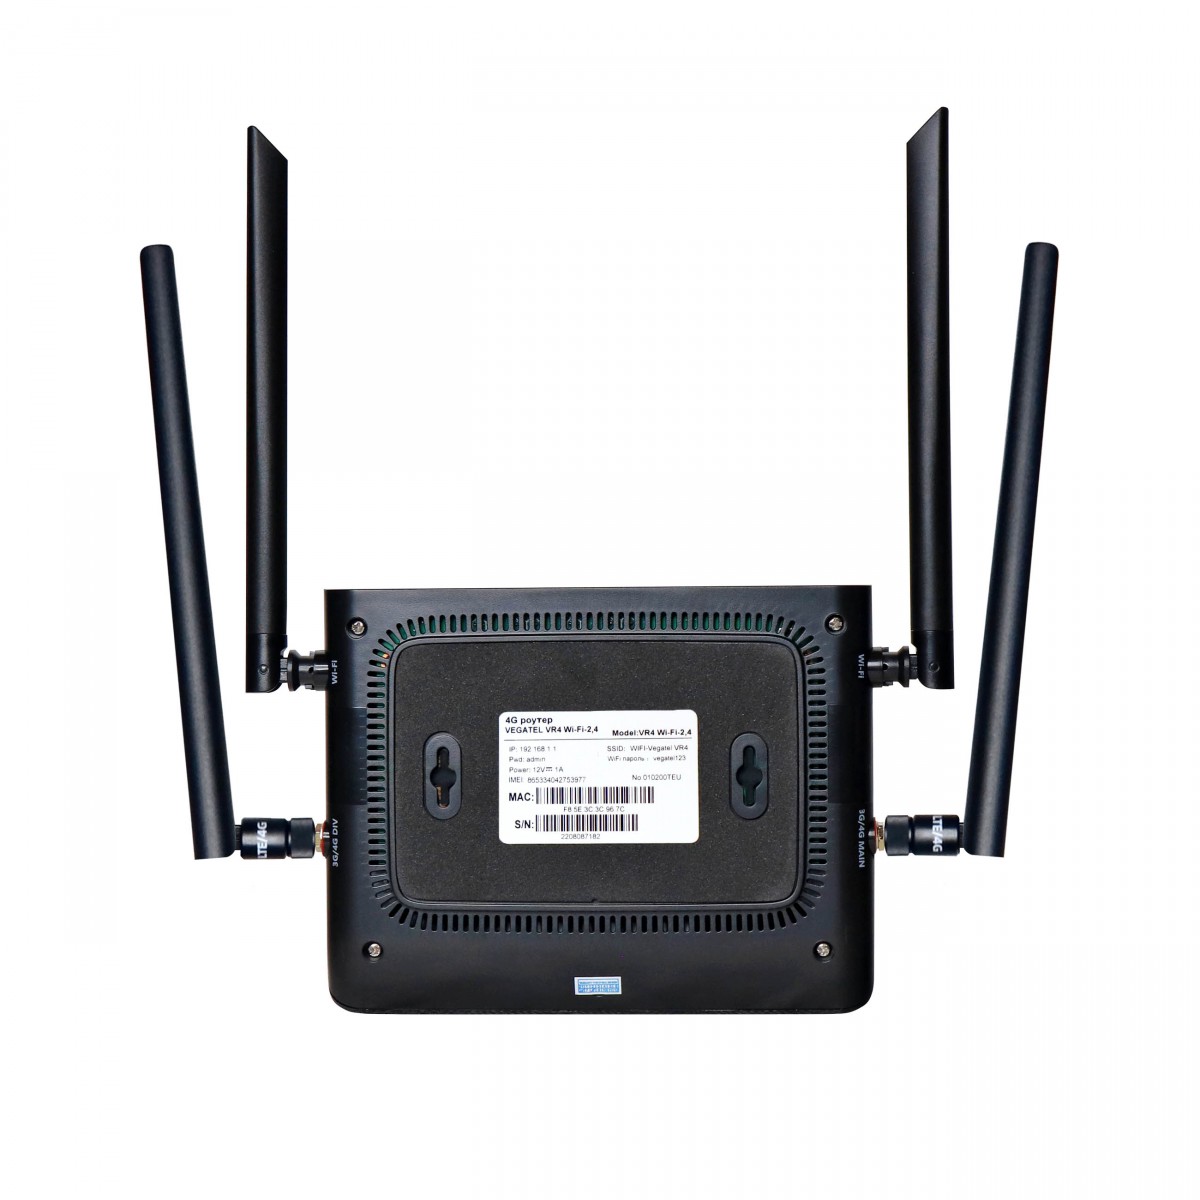 Детальное изображение товара "4G роутер VEGATEL VR4 Wi-Fi-2,4" из каталога оборудования Антенна76